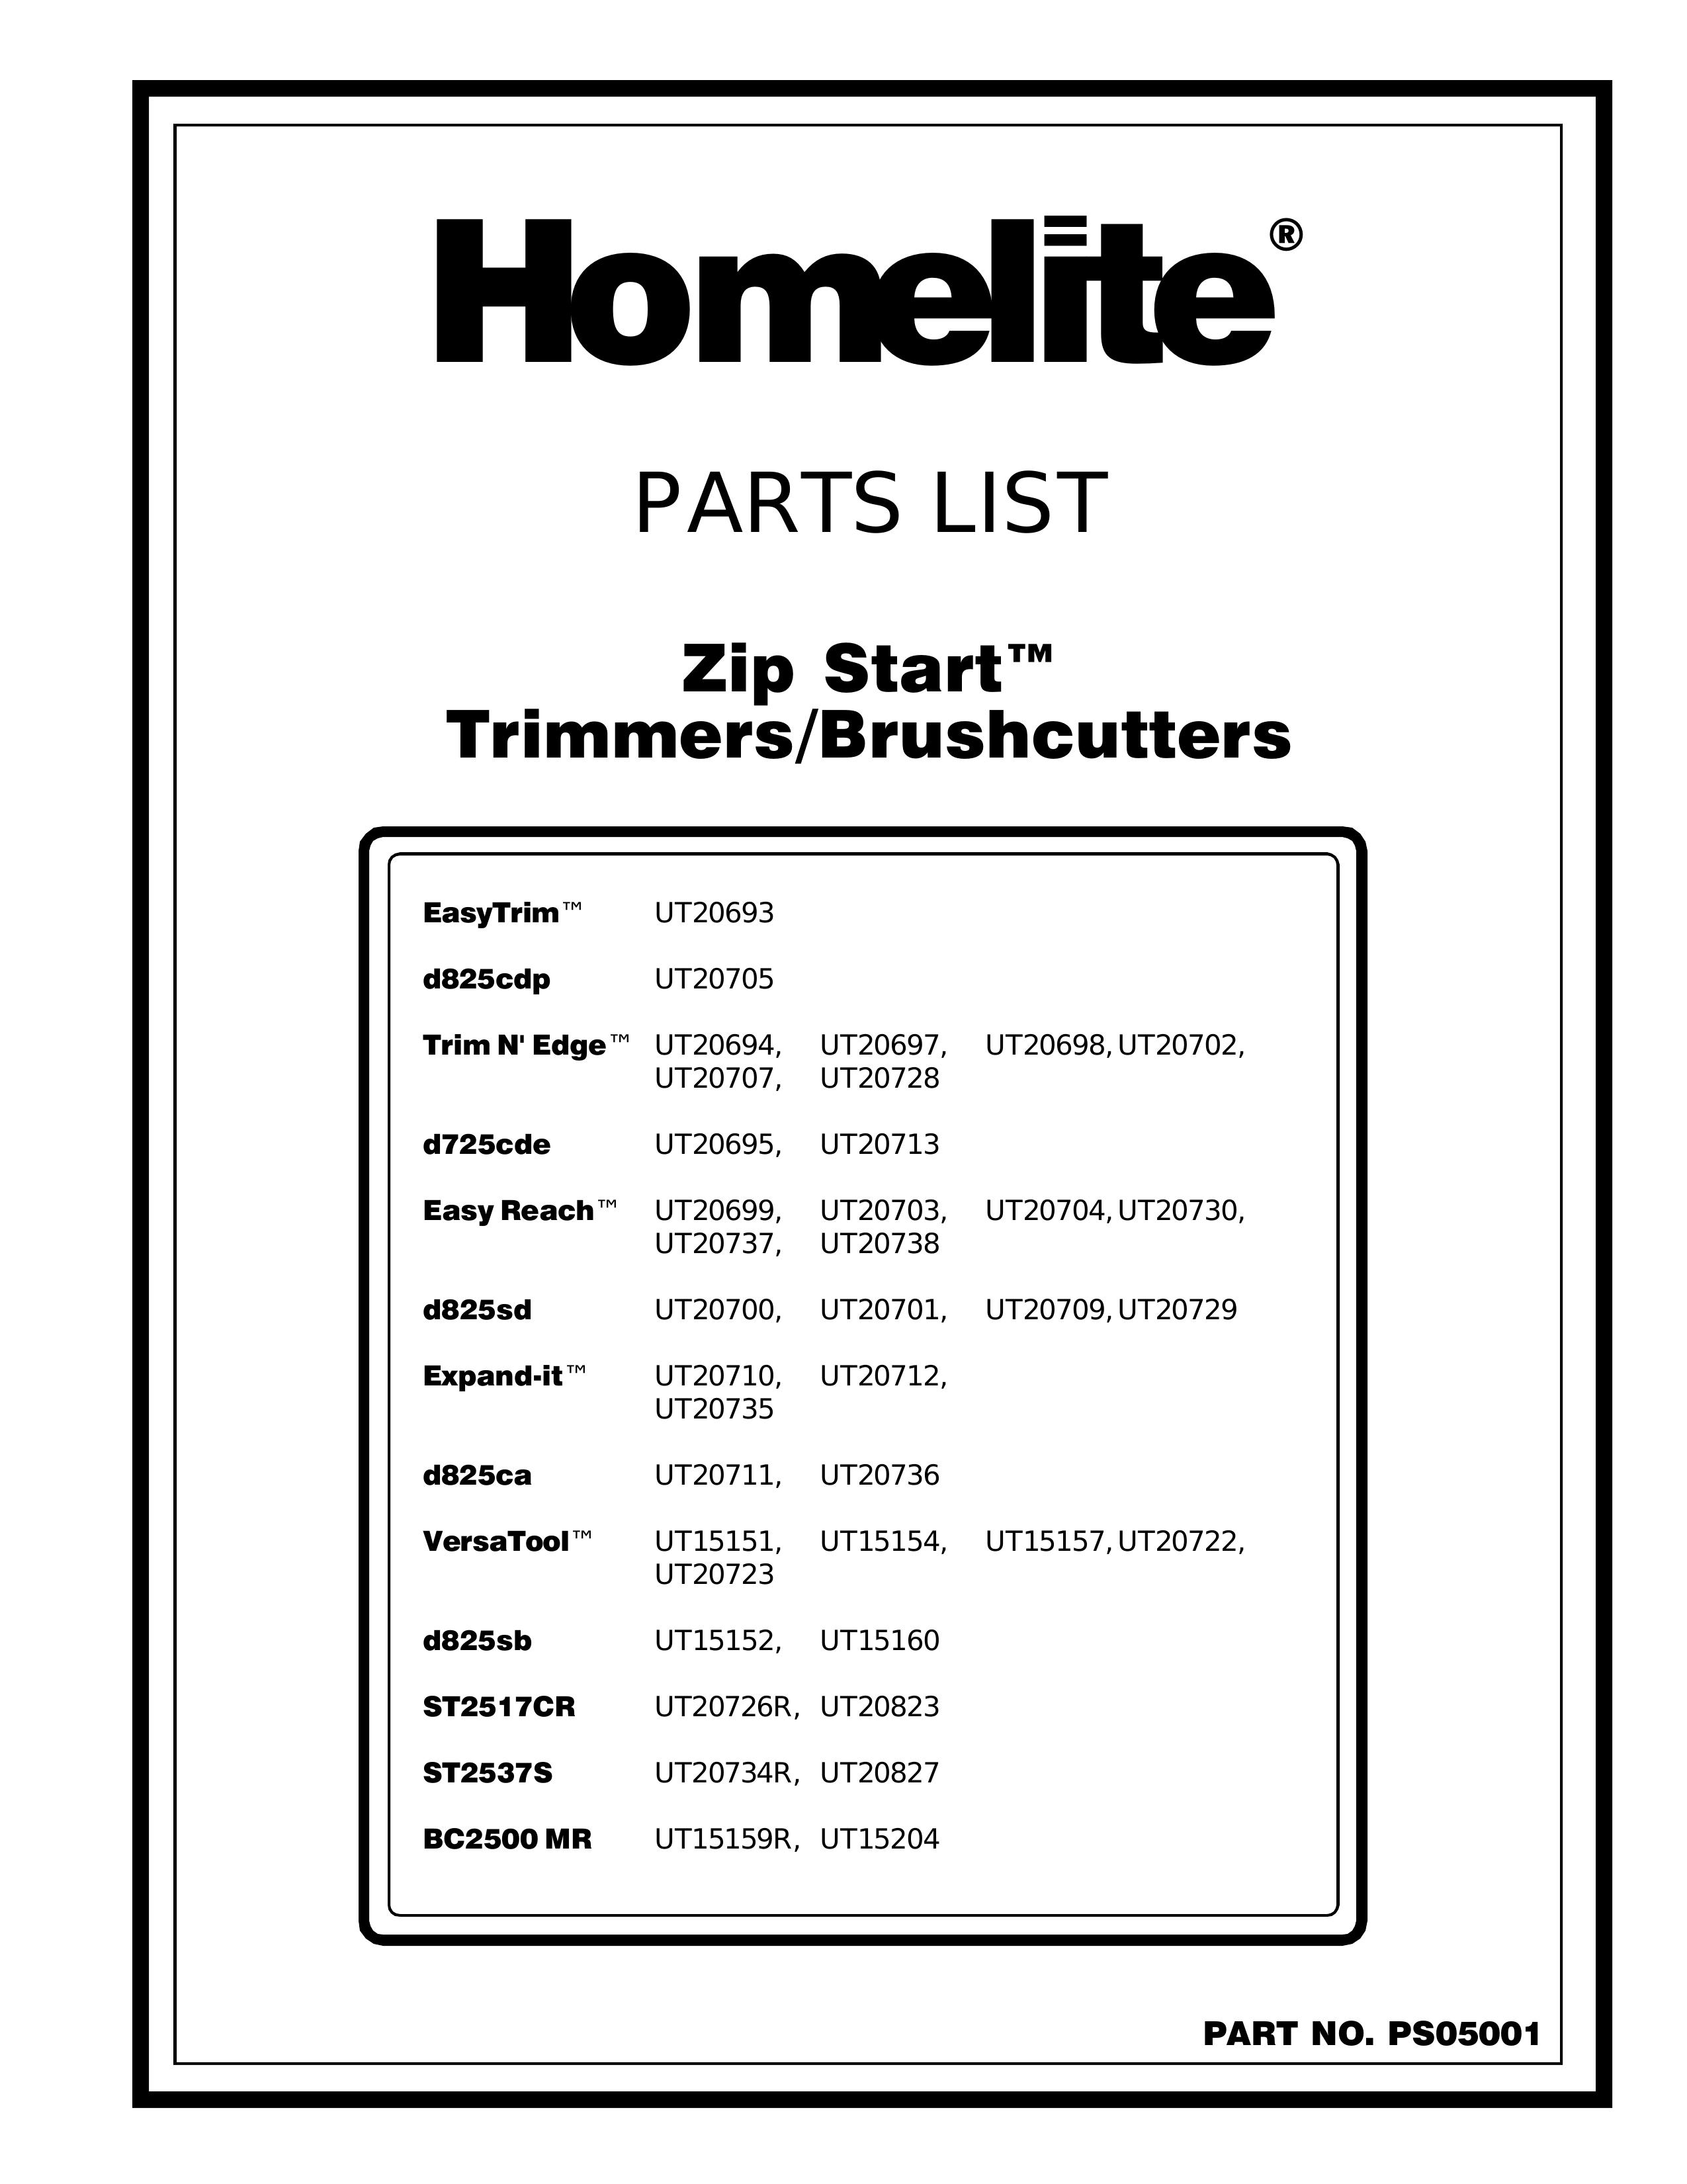 Homelite UT20729 Brush Cutter User Manual